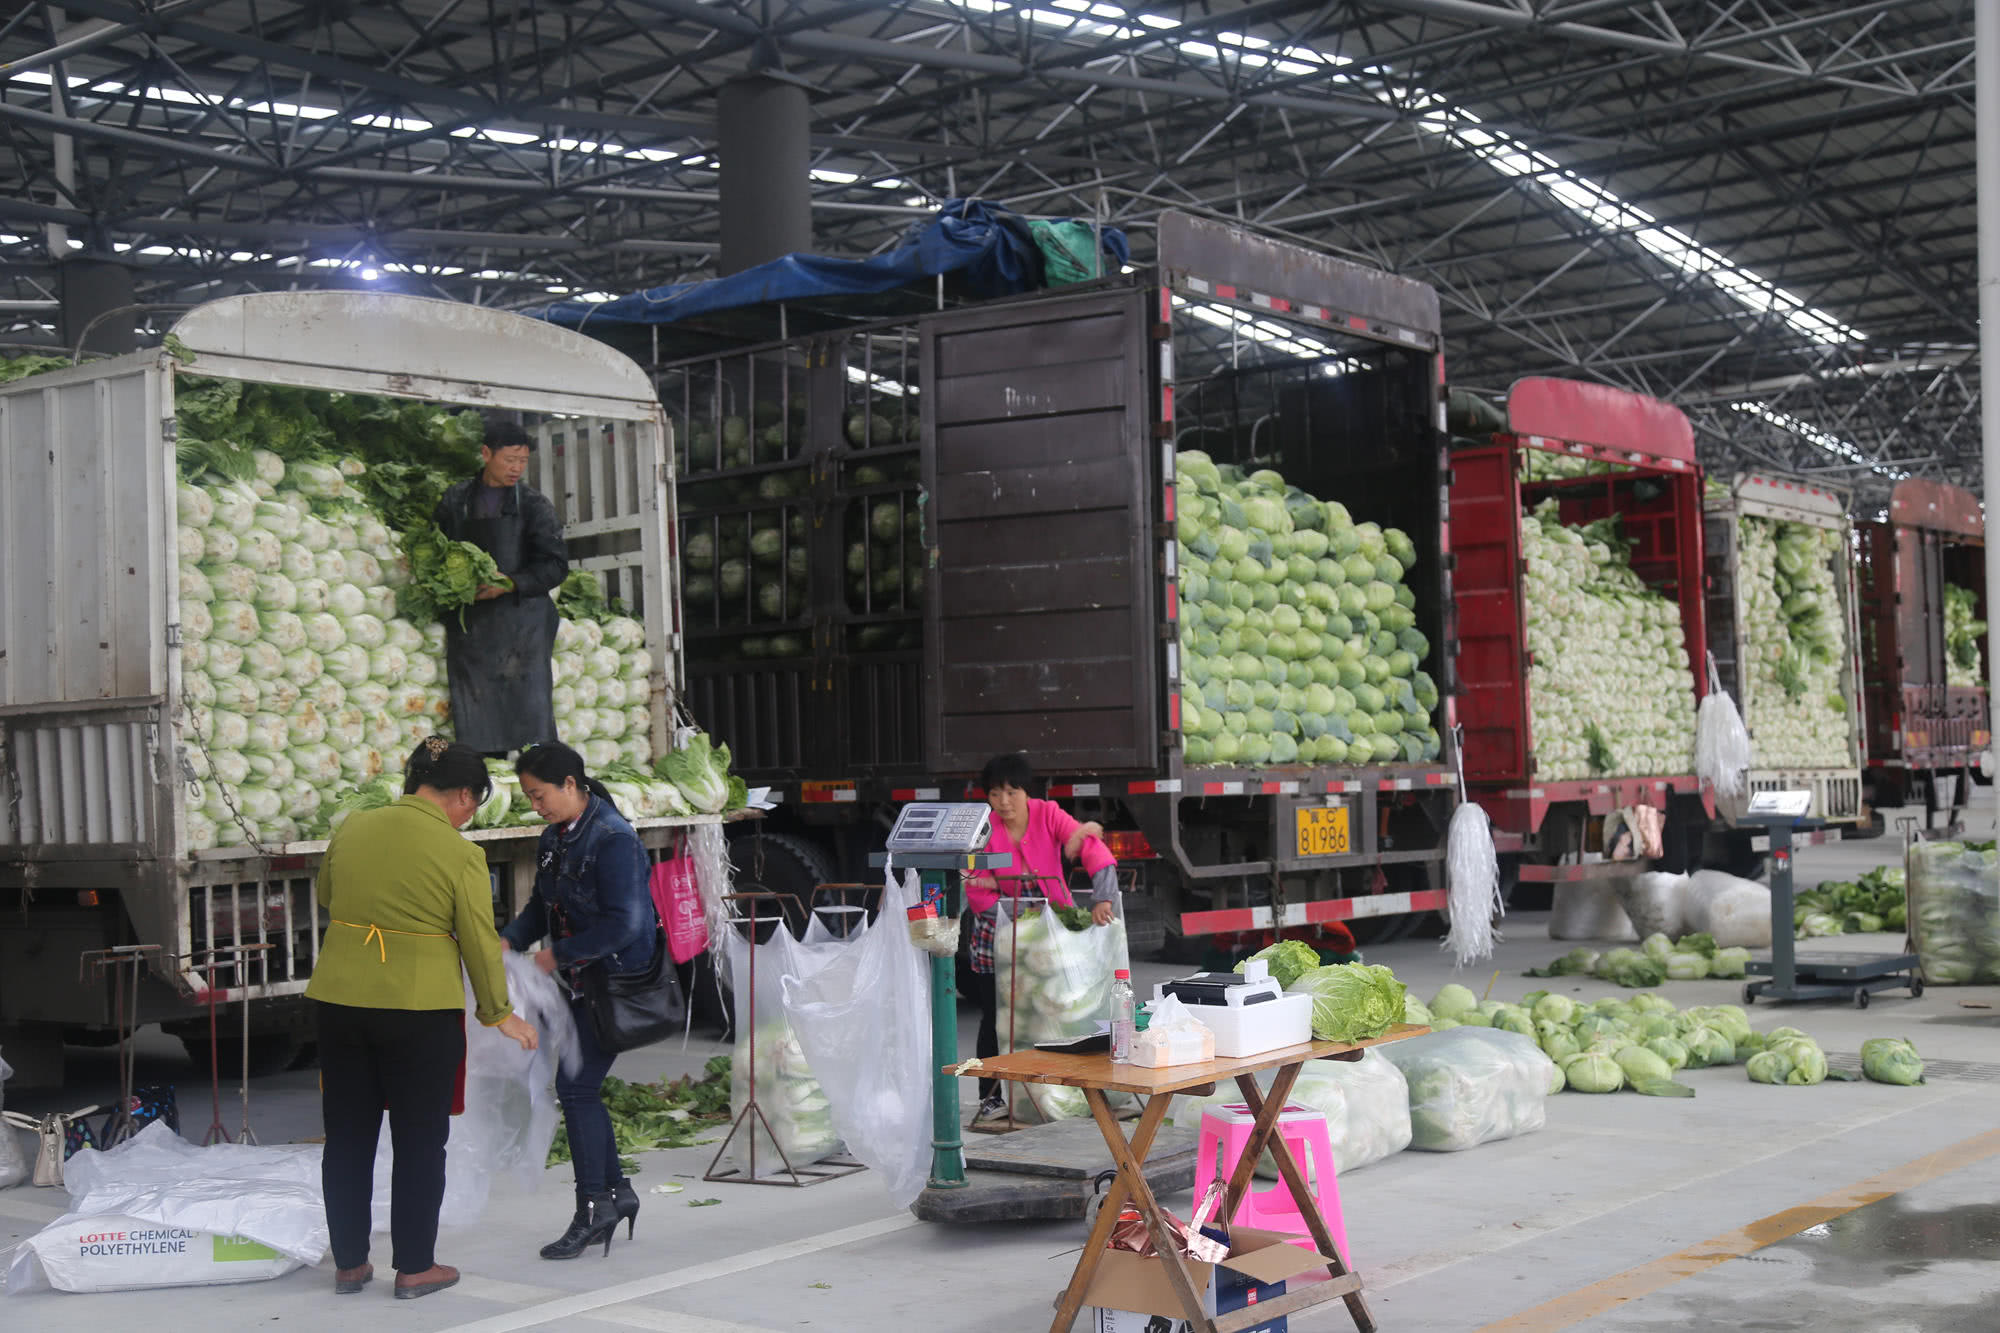 助力黔货出山,贵州双龙农副食品交易中心蔬菜交易区试运营